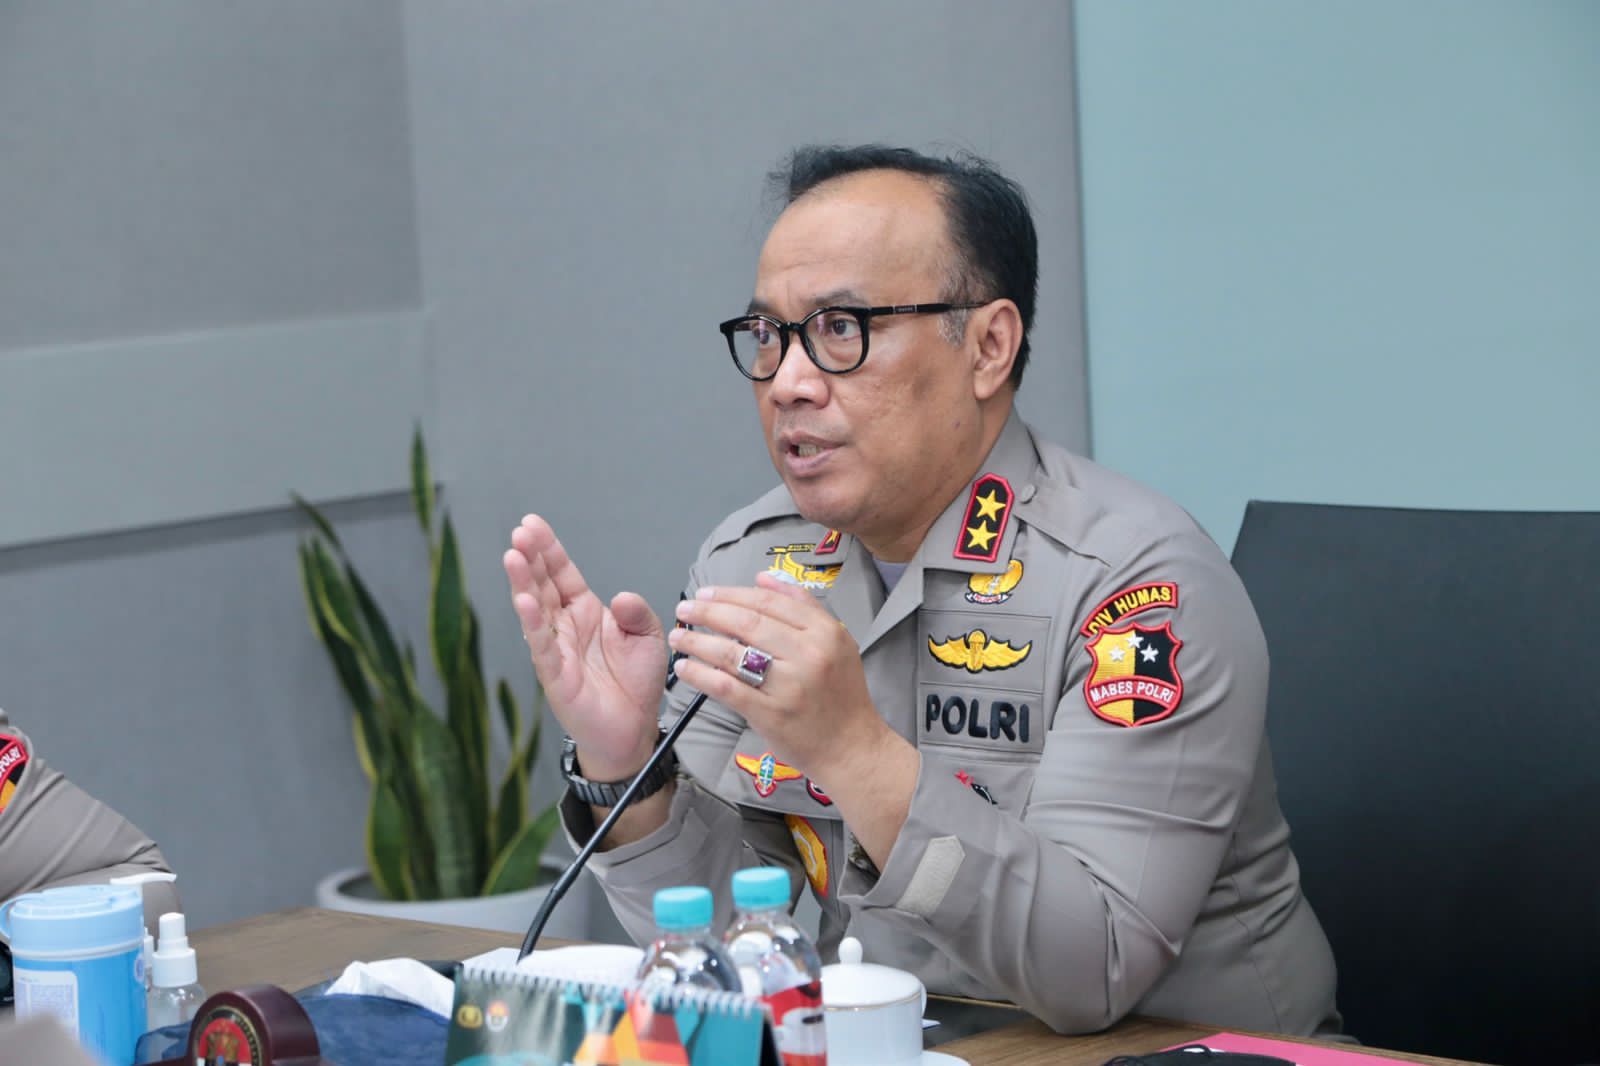 Sambut Hari Bhayangkara 2022, Polri Gelar Lomba Menembak Bersama Pati TNI-Polri & Insan Pers